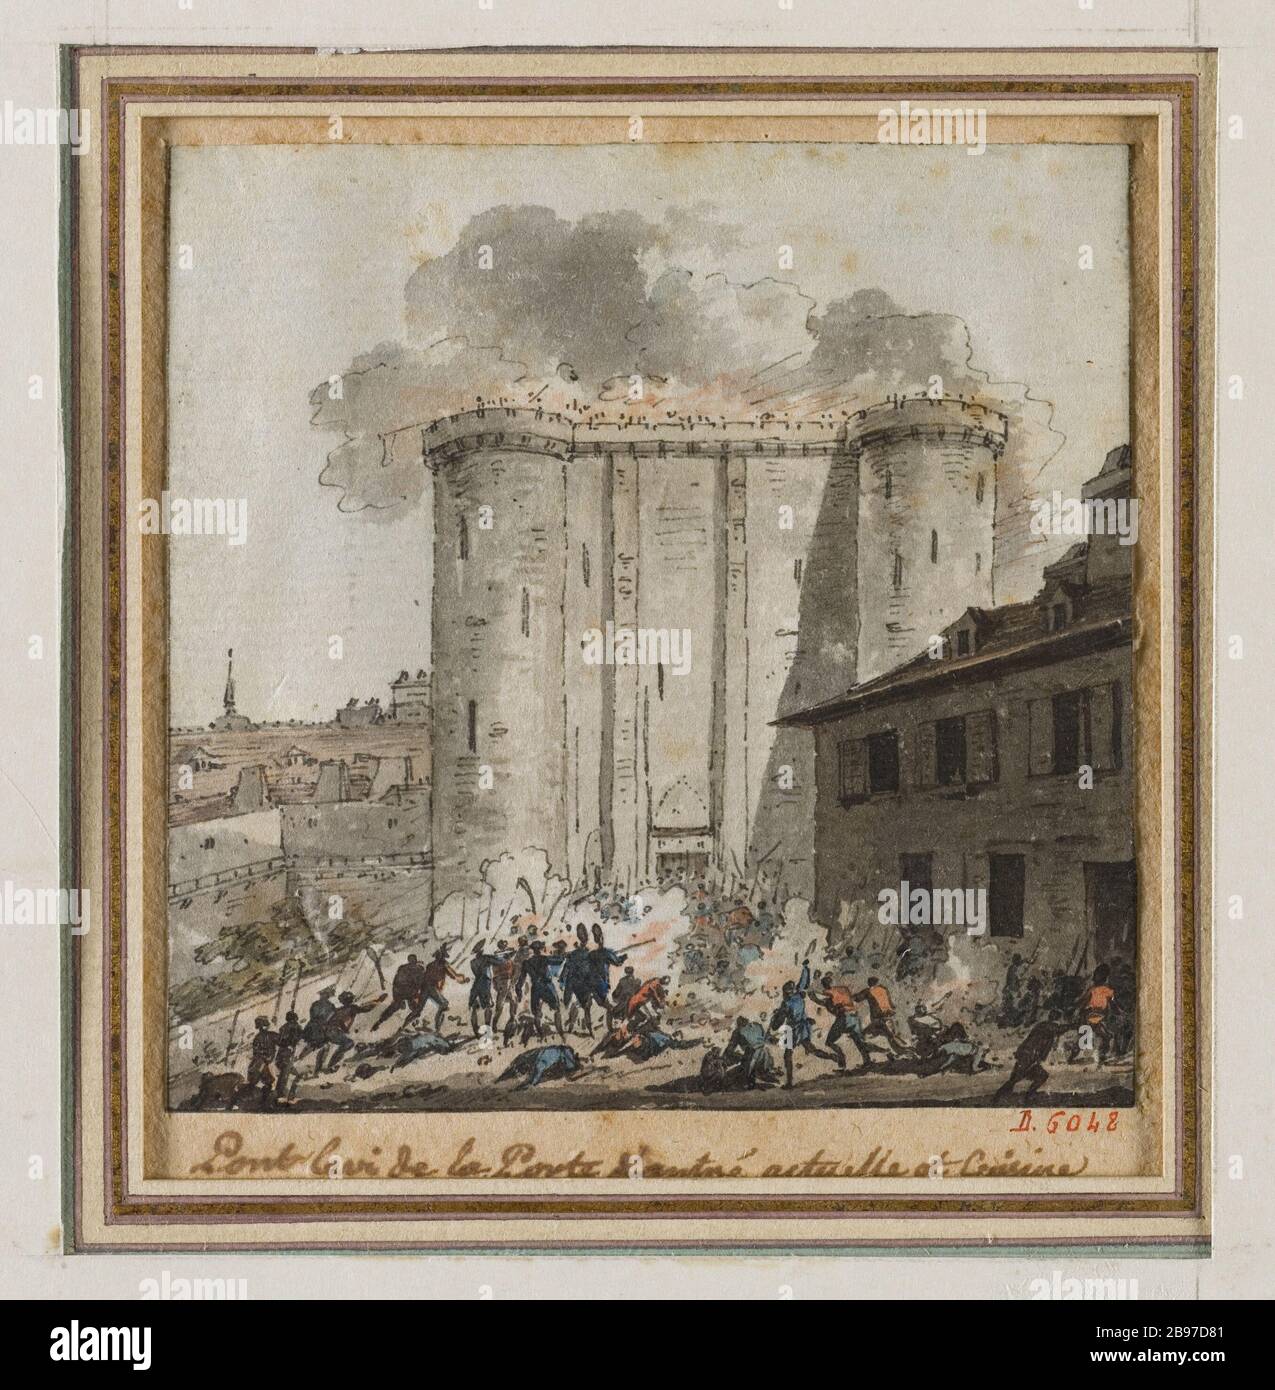 ATAQUE DE LA BASTILLA DE PONT-LEVIS A LA PUERTA PRINCIPAL DEL FUERTE  'L'attaque de la Bastille au pont-levis de la porte d'entrée du fort'.  Plume, aquarelle, 1789. Ecole française, fin XVIIIème siècle.